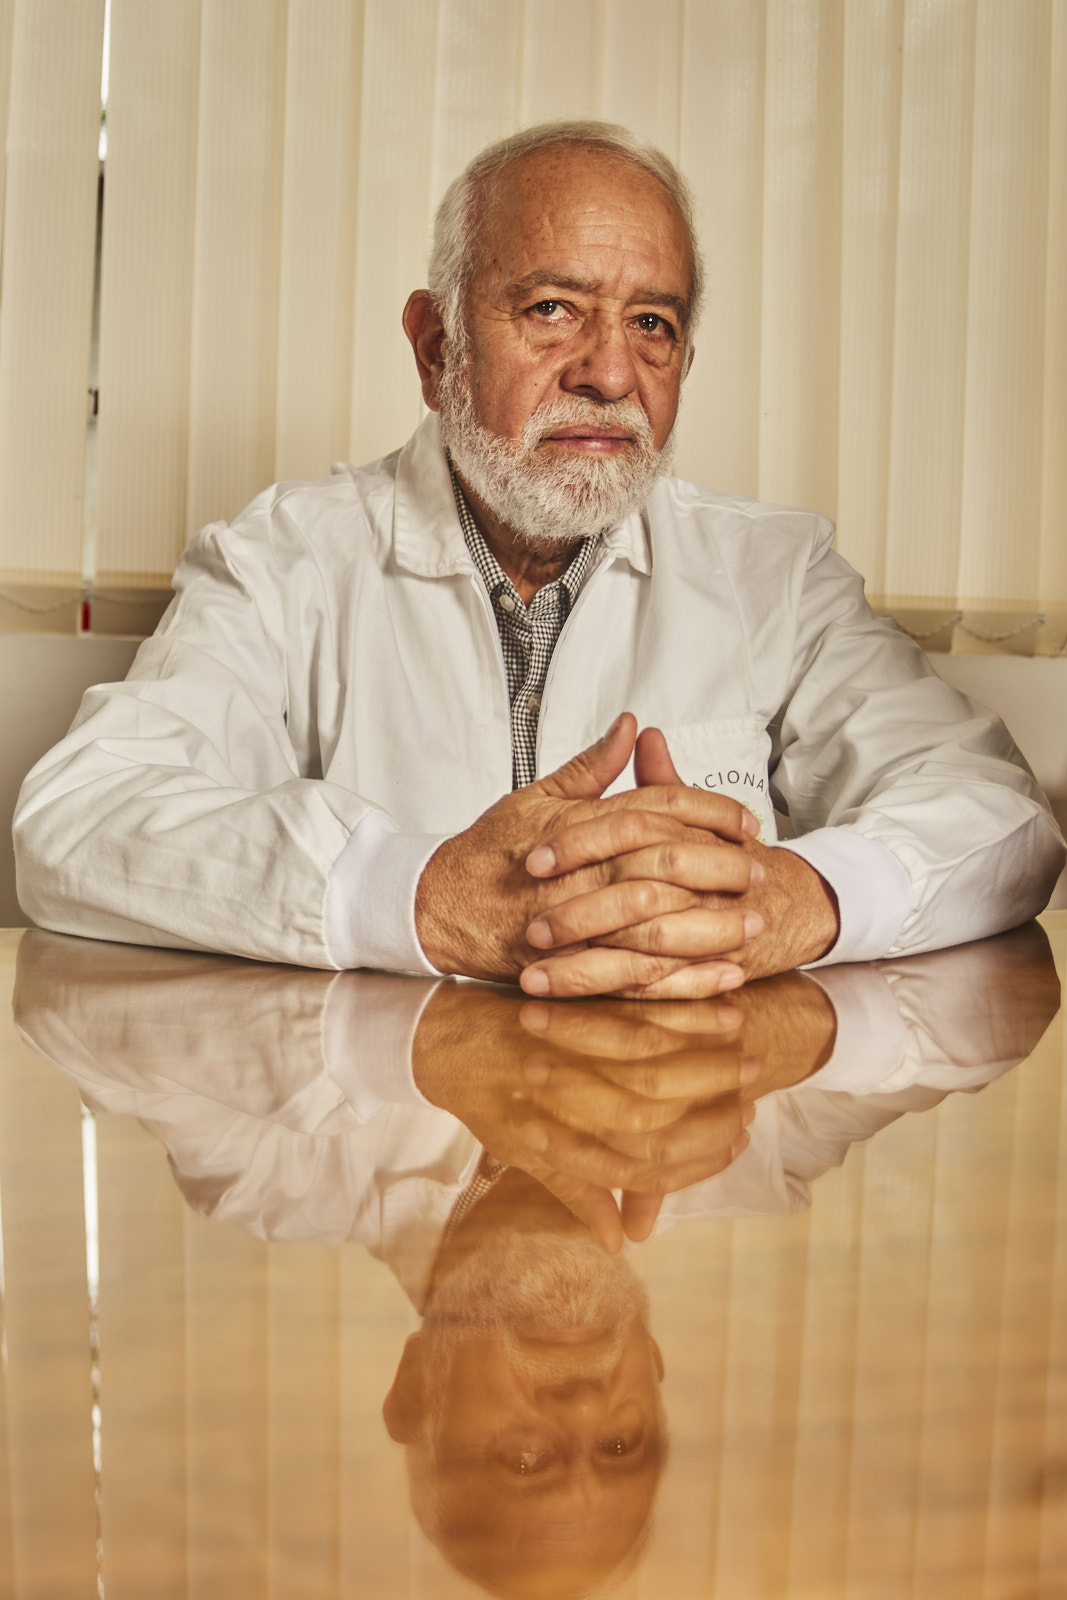 Jorge Aristóbulo Cotrino González